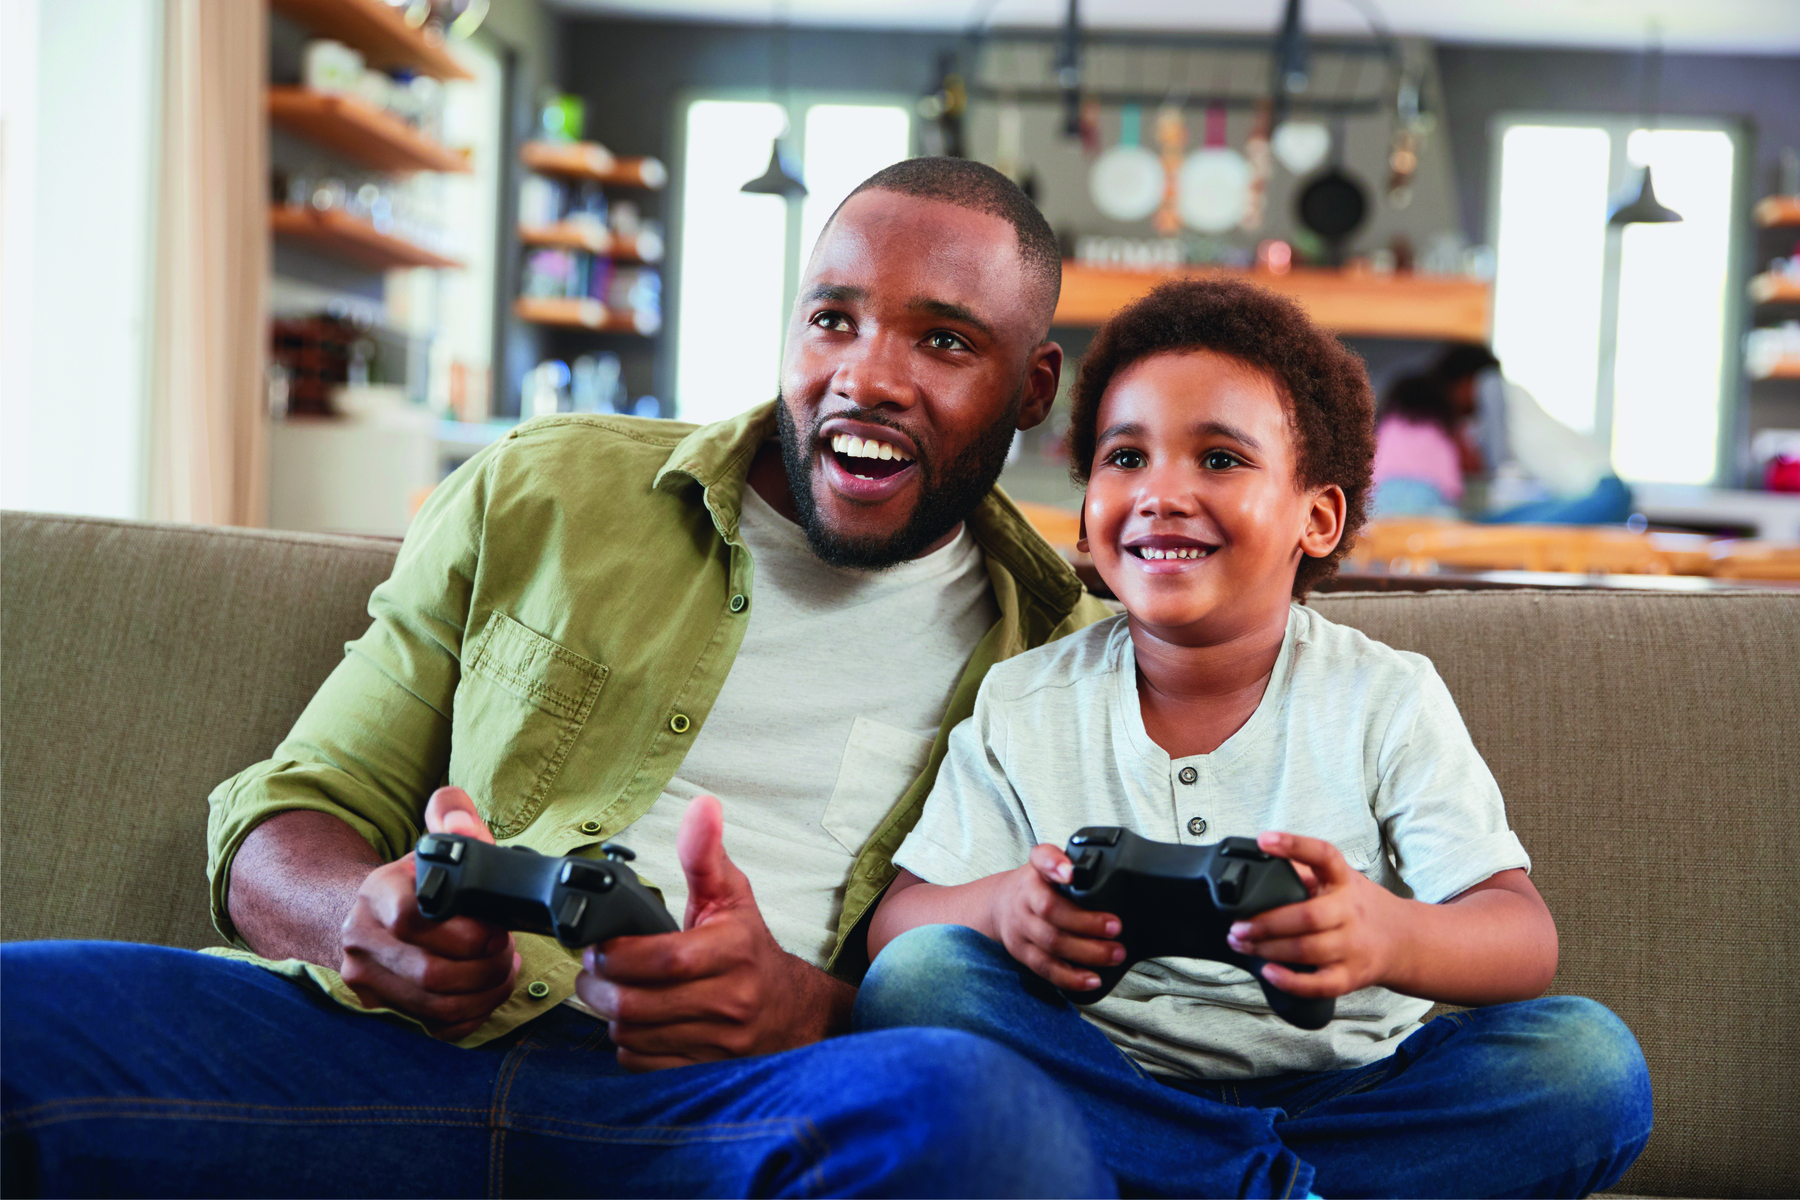 Fotografia. Um homem de cabelo curto, usando uma jaqueta verde, camiseta branca, está sentado em um sofá, segurando um controle de videogame e sorrindo; ao seu lado, um menino de cabelo cacheado e curto, usando camiseta branca, está sentado no sofá, segurando um controle de videogame e sorrindo.